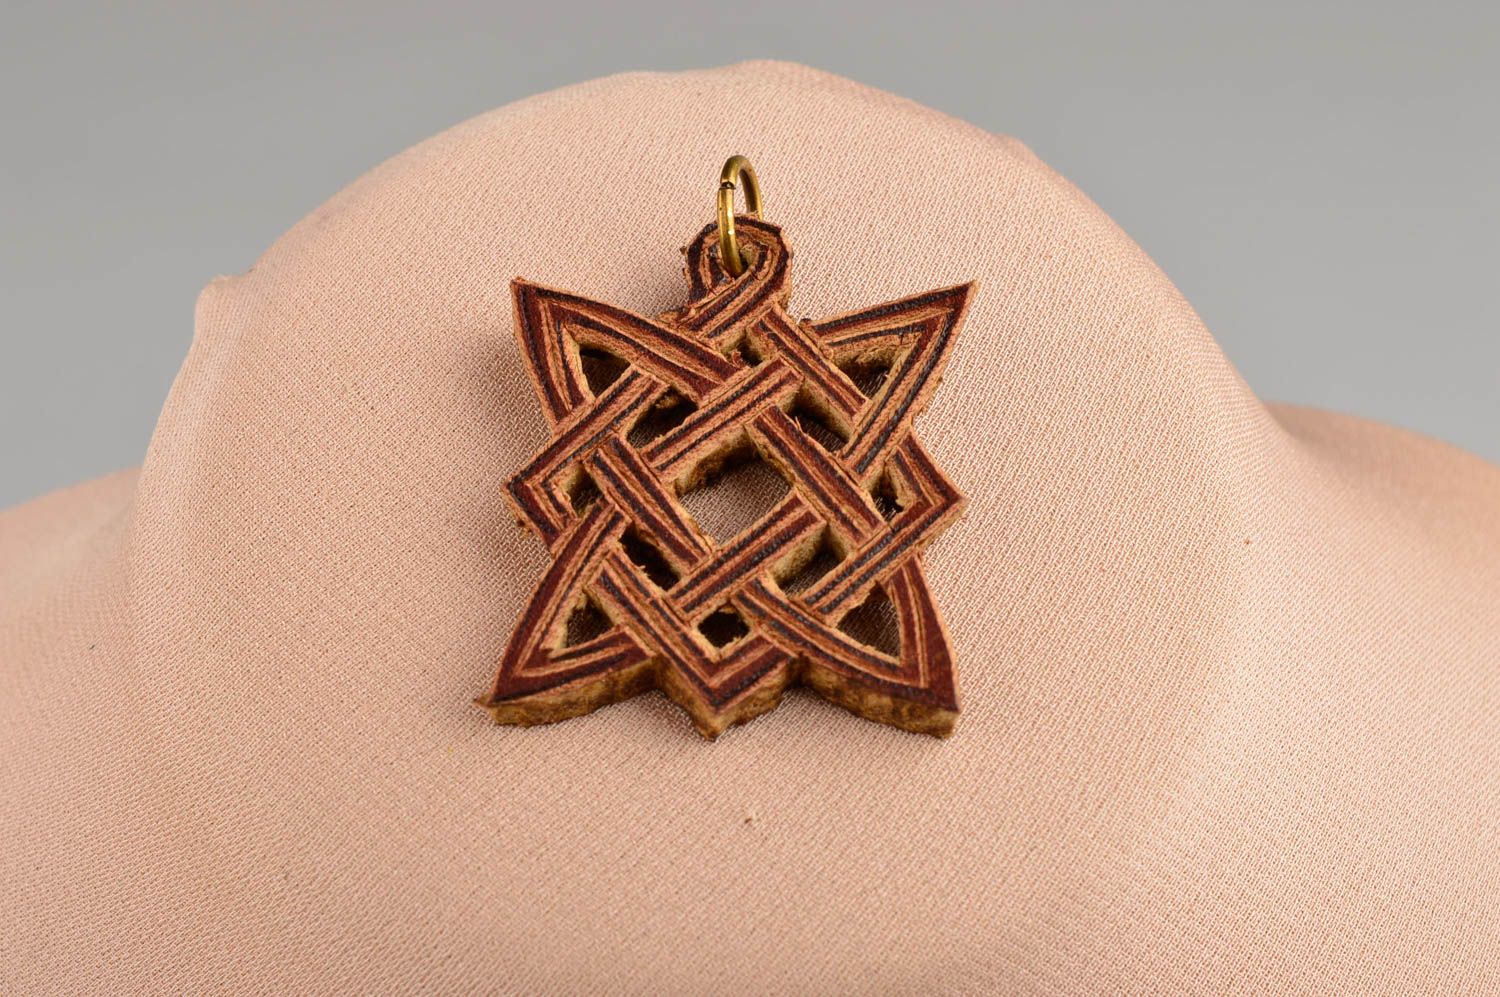 Handmade pendant in ethnic style designer leather pendant unusual jewelry photo 1